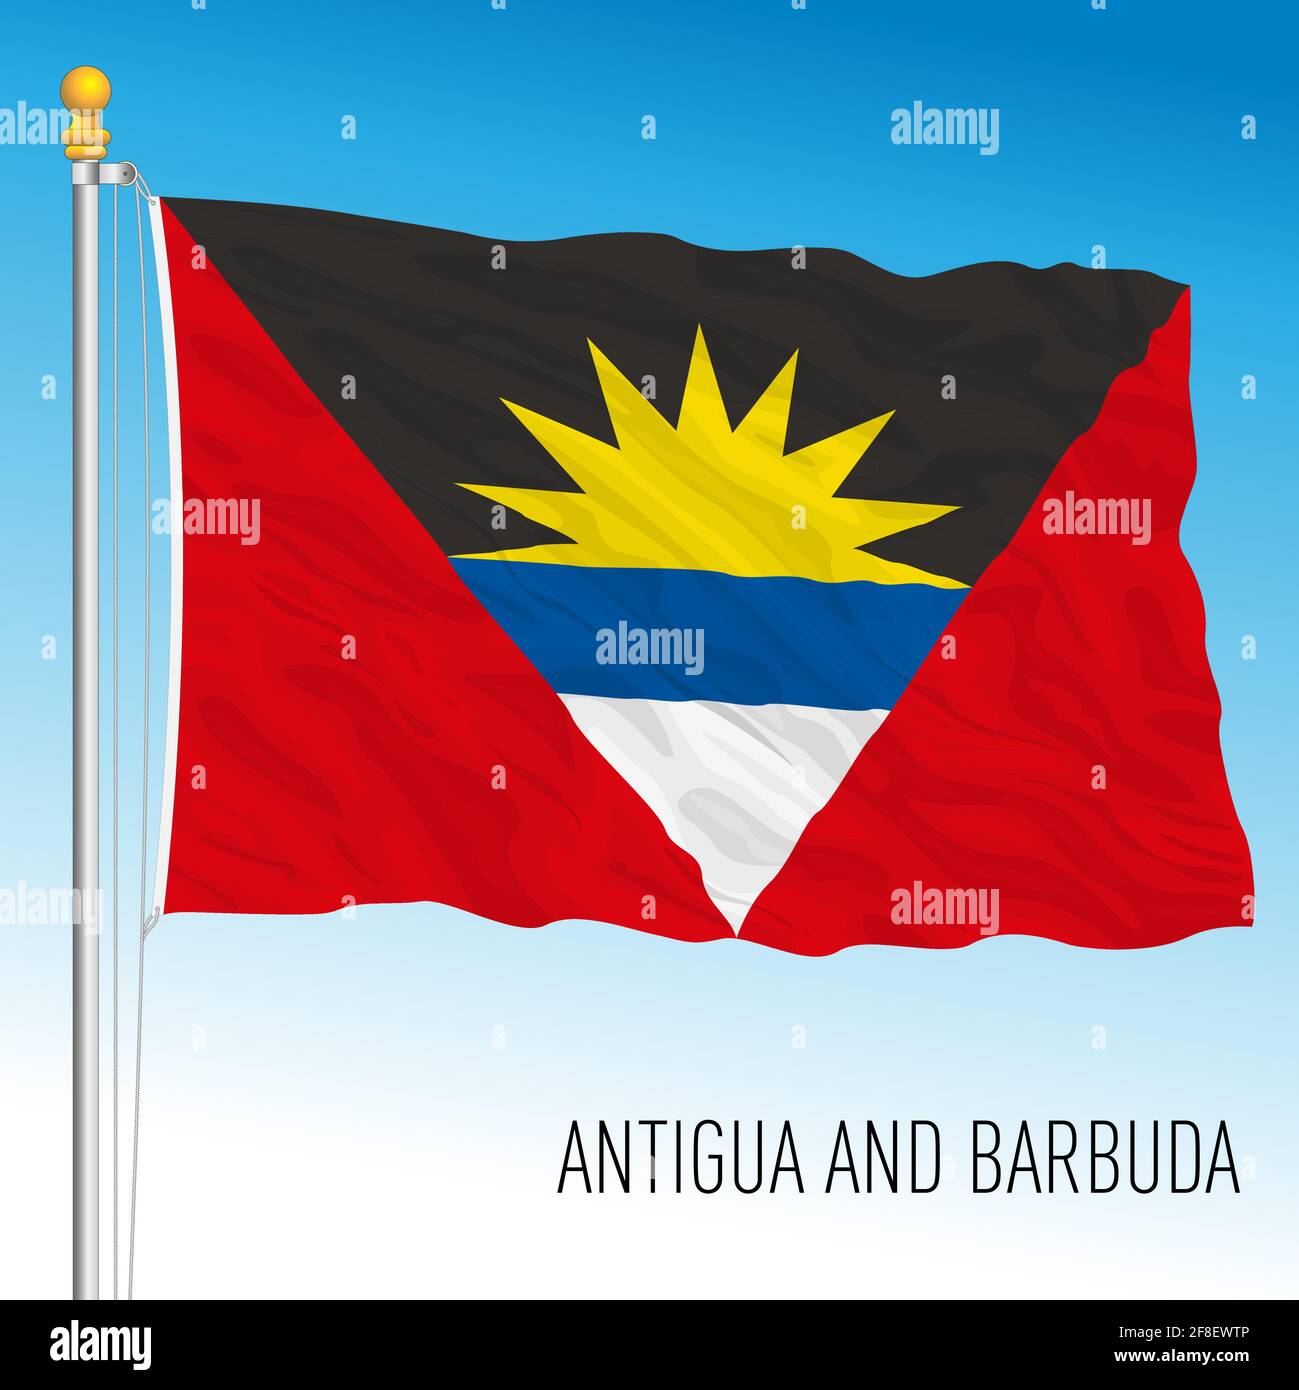 Antigua und Barbuda offizielle Nationalflagge, karibisches Land, Vektorgrafik Stock Vektor